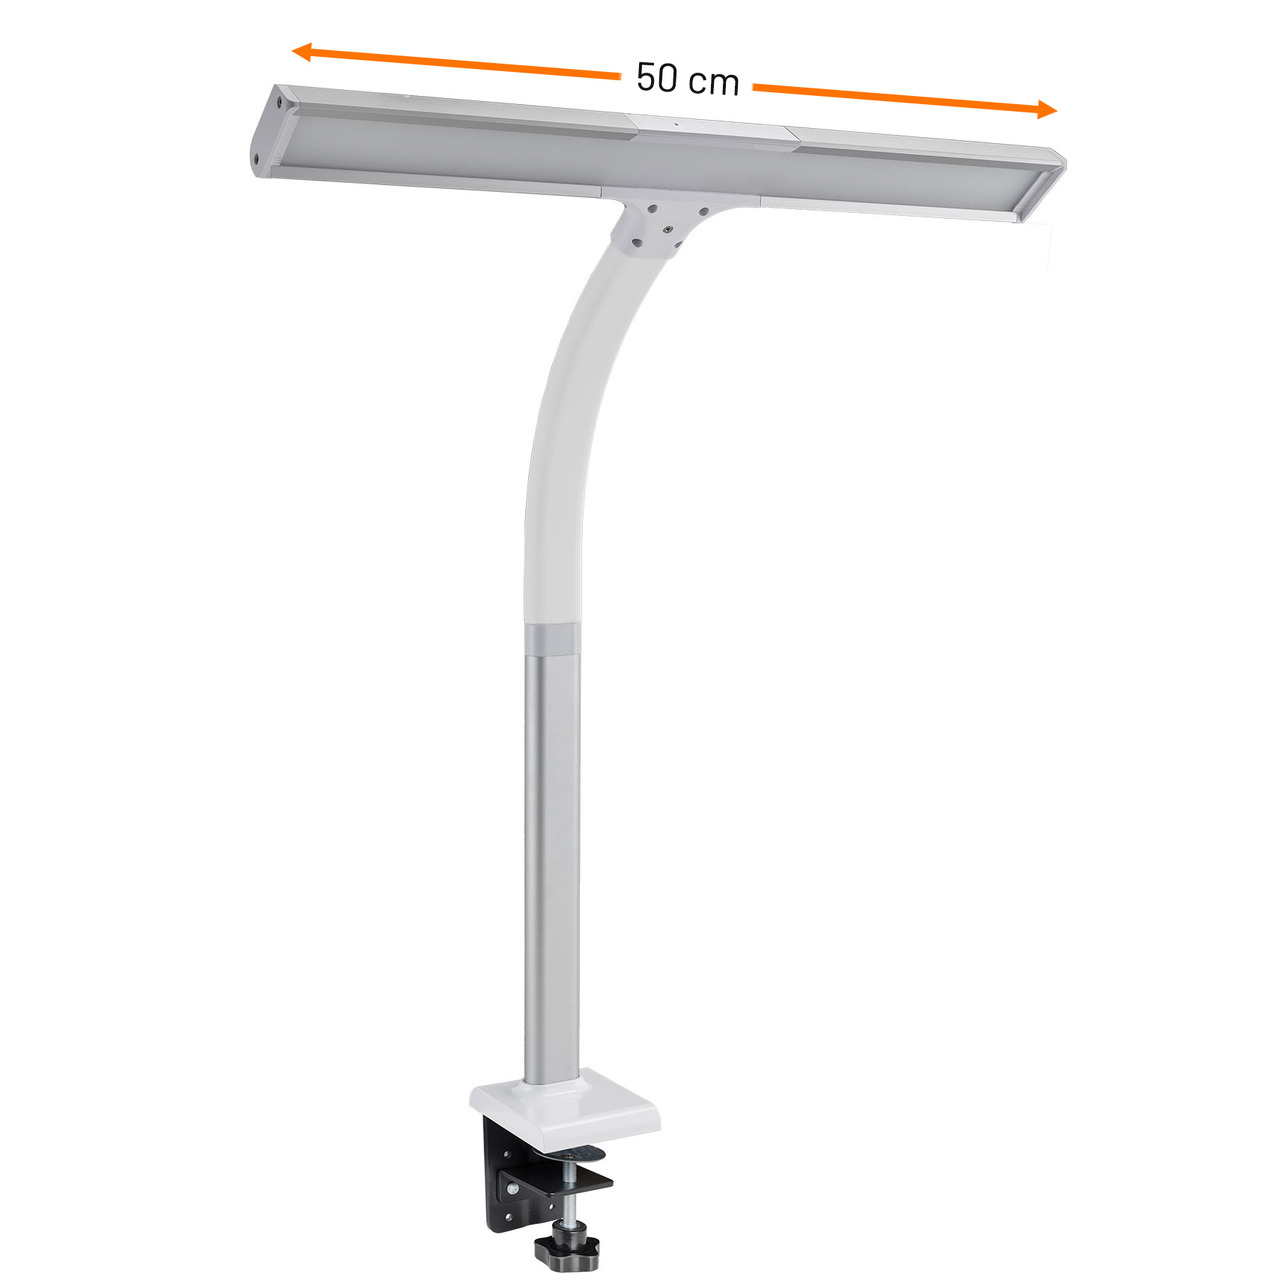 FeinTech 10-W-LED-Schreibtischleuchte - LED-Klemmleuchte LTL00310- Tischmontage- 50 cm- weiss-silber